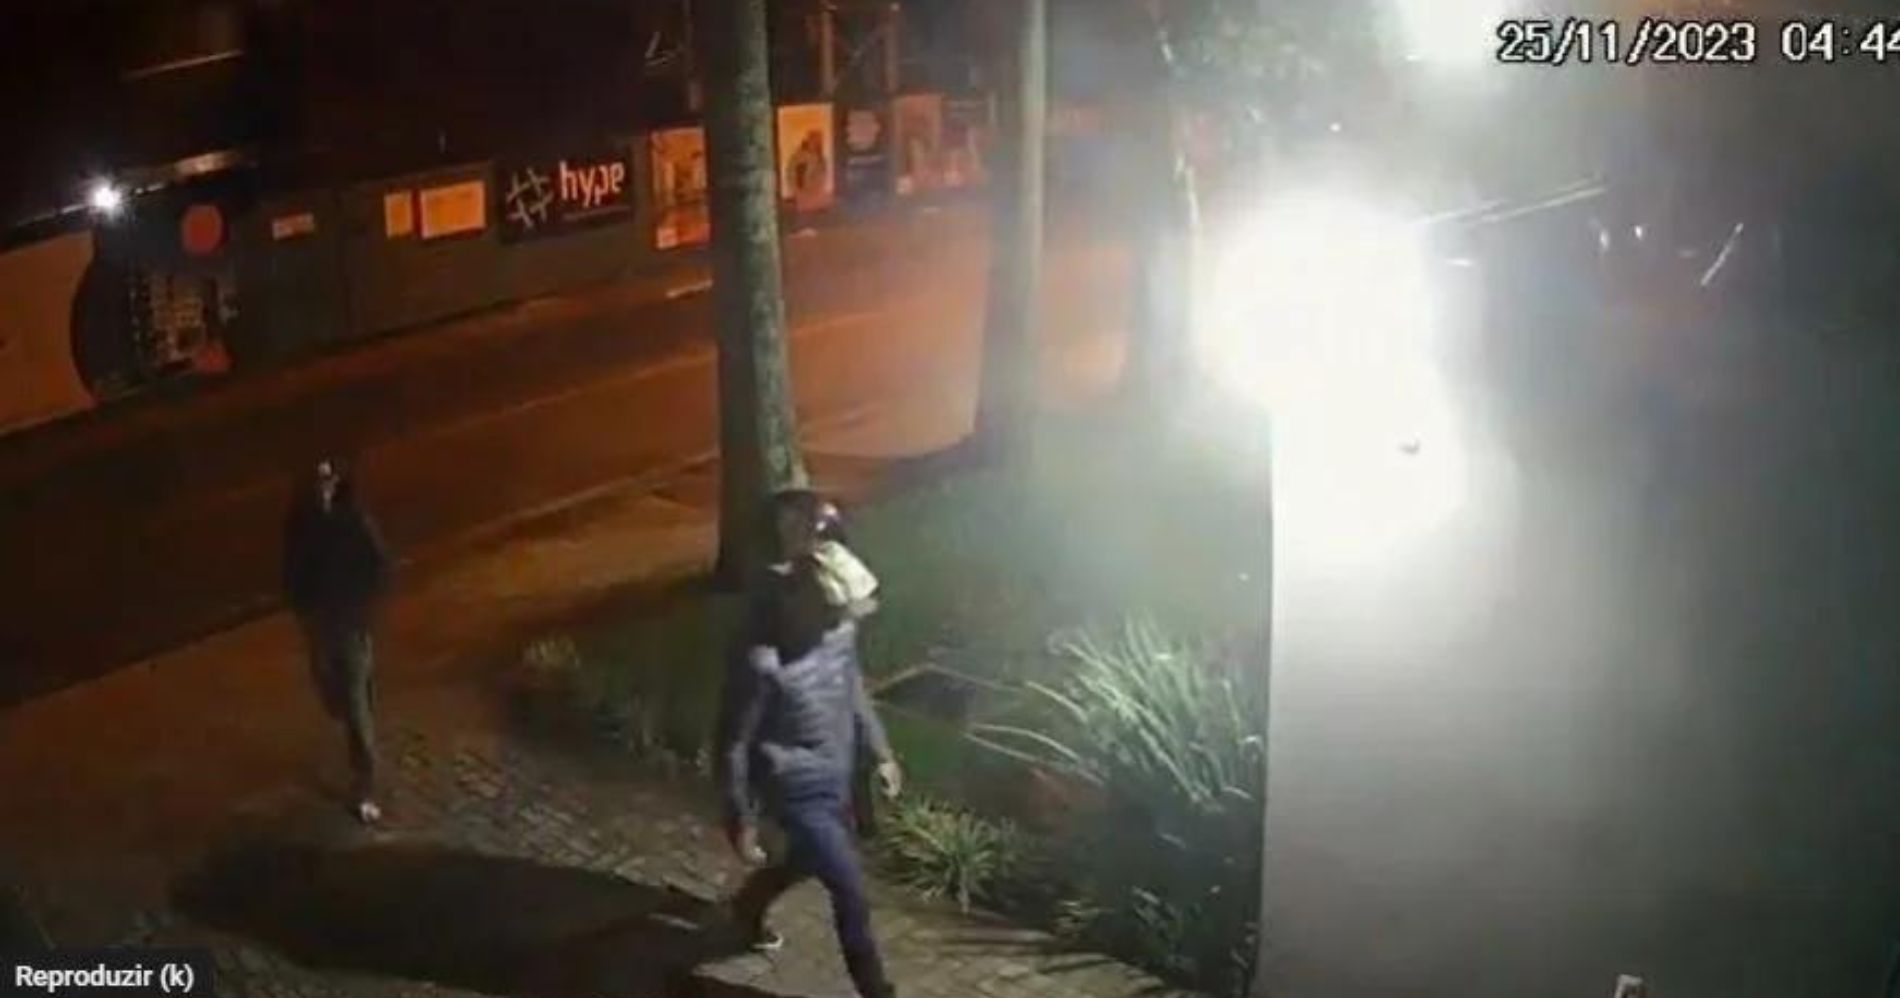 Dupla arromba portões e furta bicicletas em edifício de Curitiba; câmera de segurança filmou tudo